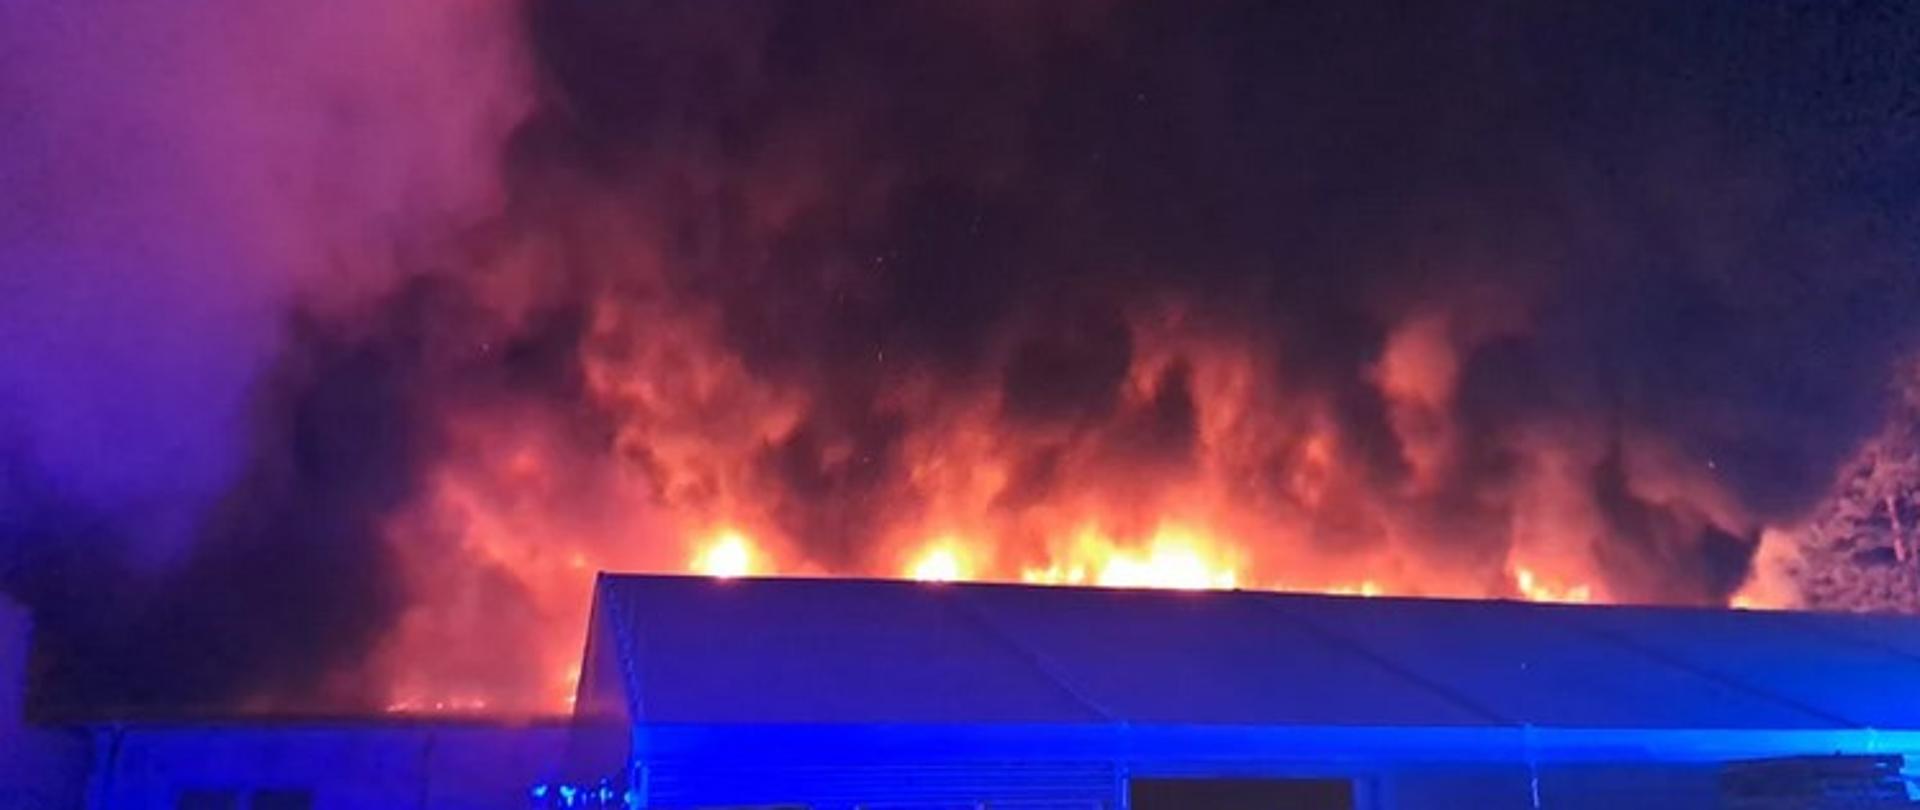 Zdjęcie zrobione w nocy. Na pierwszym planie hala z dachem dwuspadowym, za nim widać płomienie i dym palącego się innego budynku.